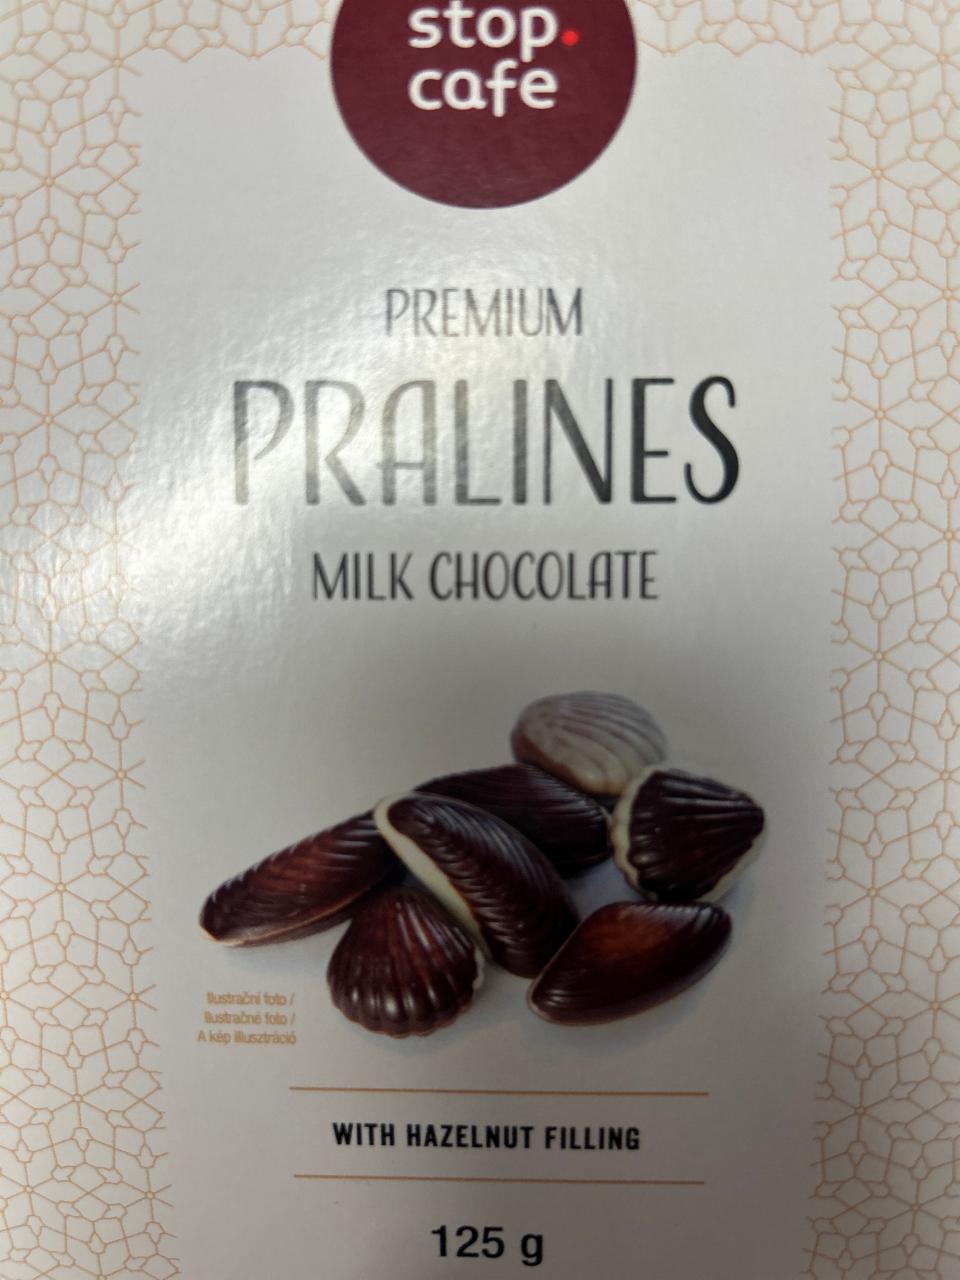 Fotografie - Premium Pralines Milk Chocolate Stop Cafe